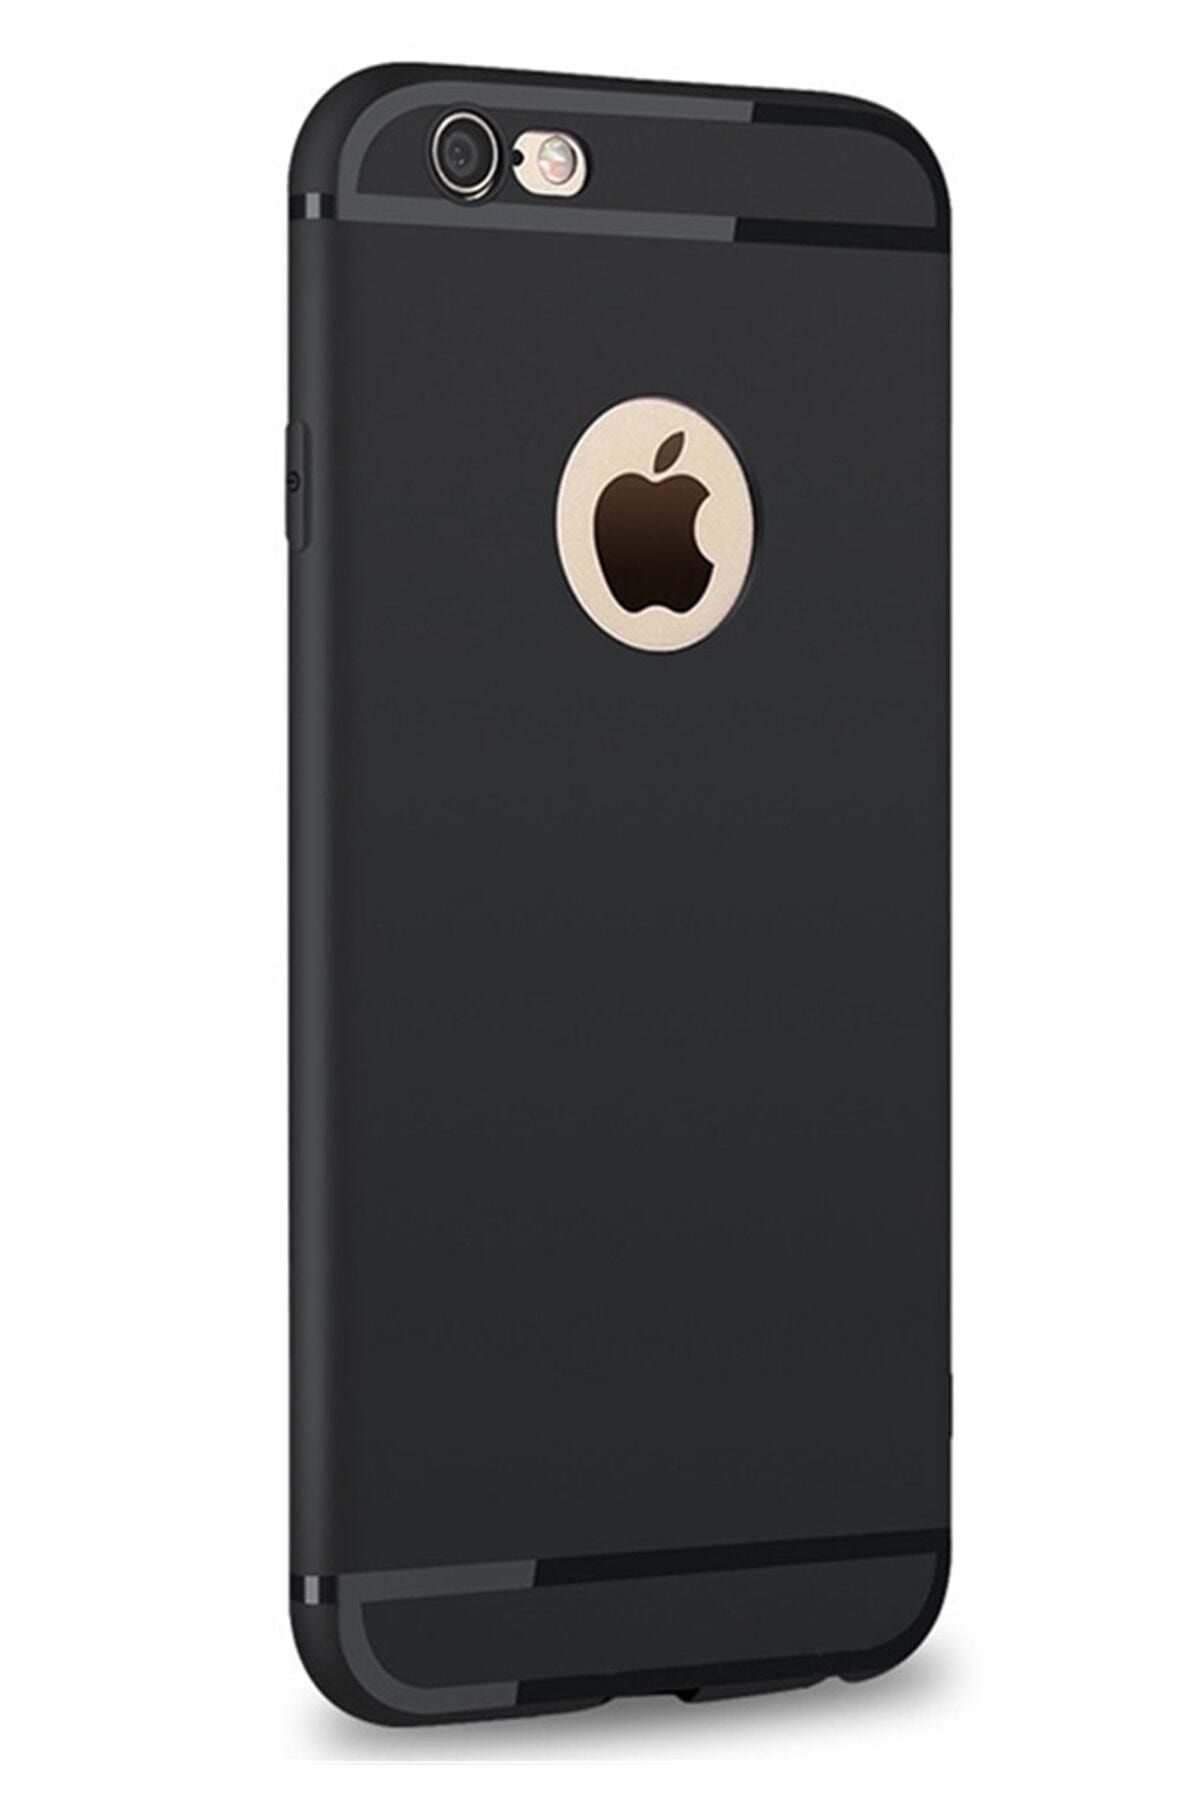 CEPSTOK Iphone 6 / 6s Kılıf Ultra Ince Siyah Silikon Kılıf